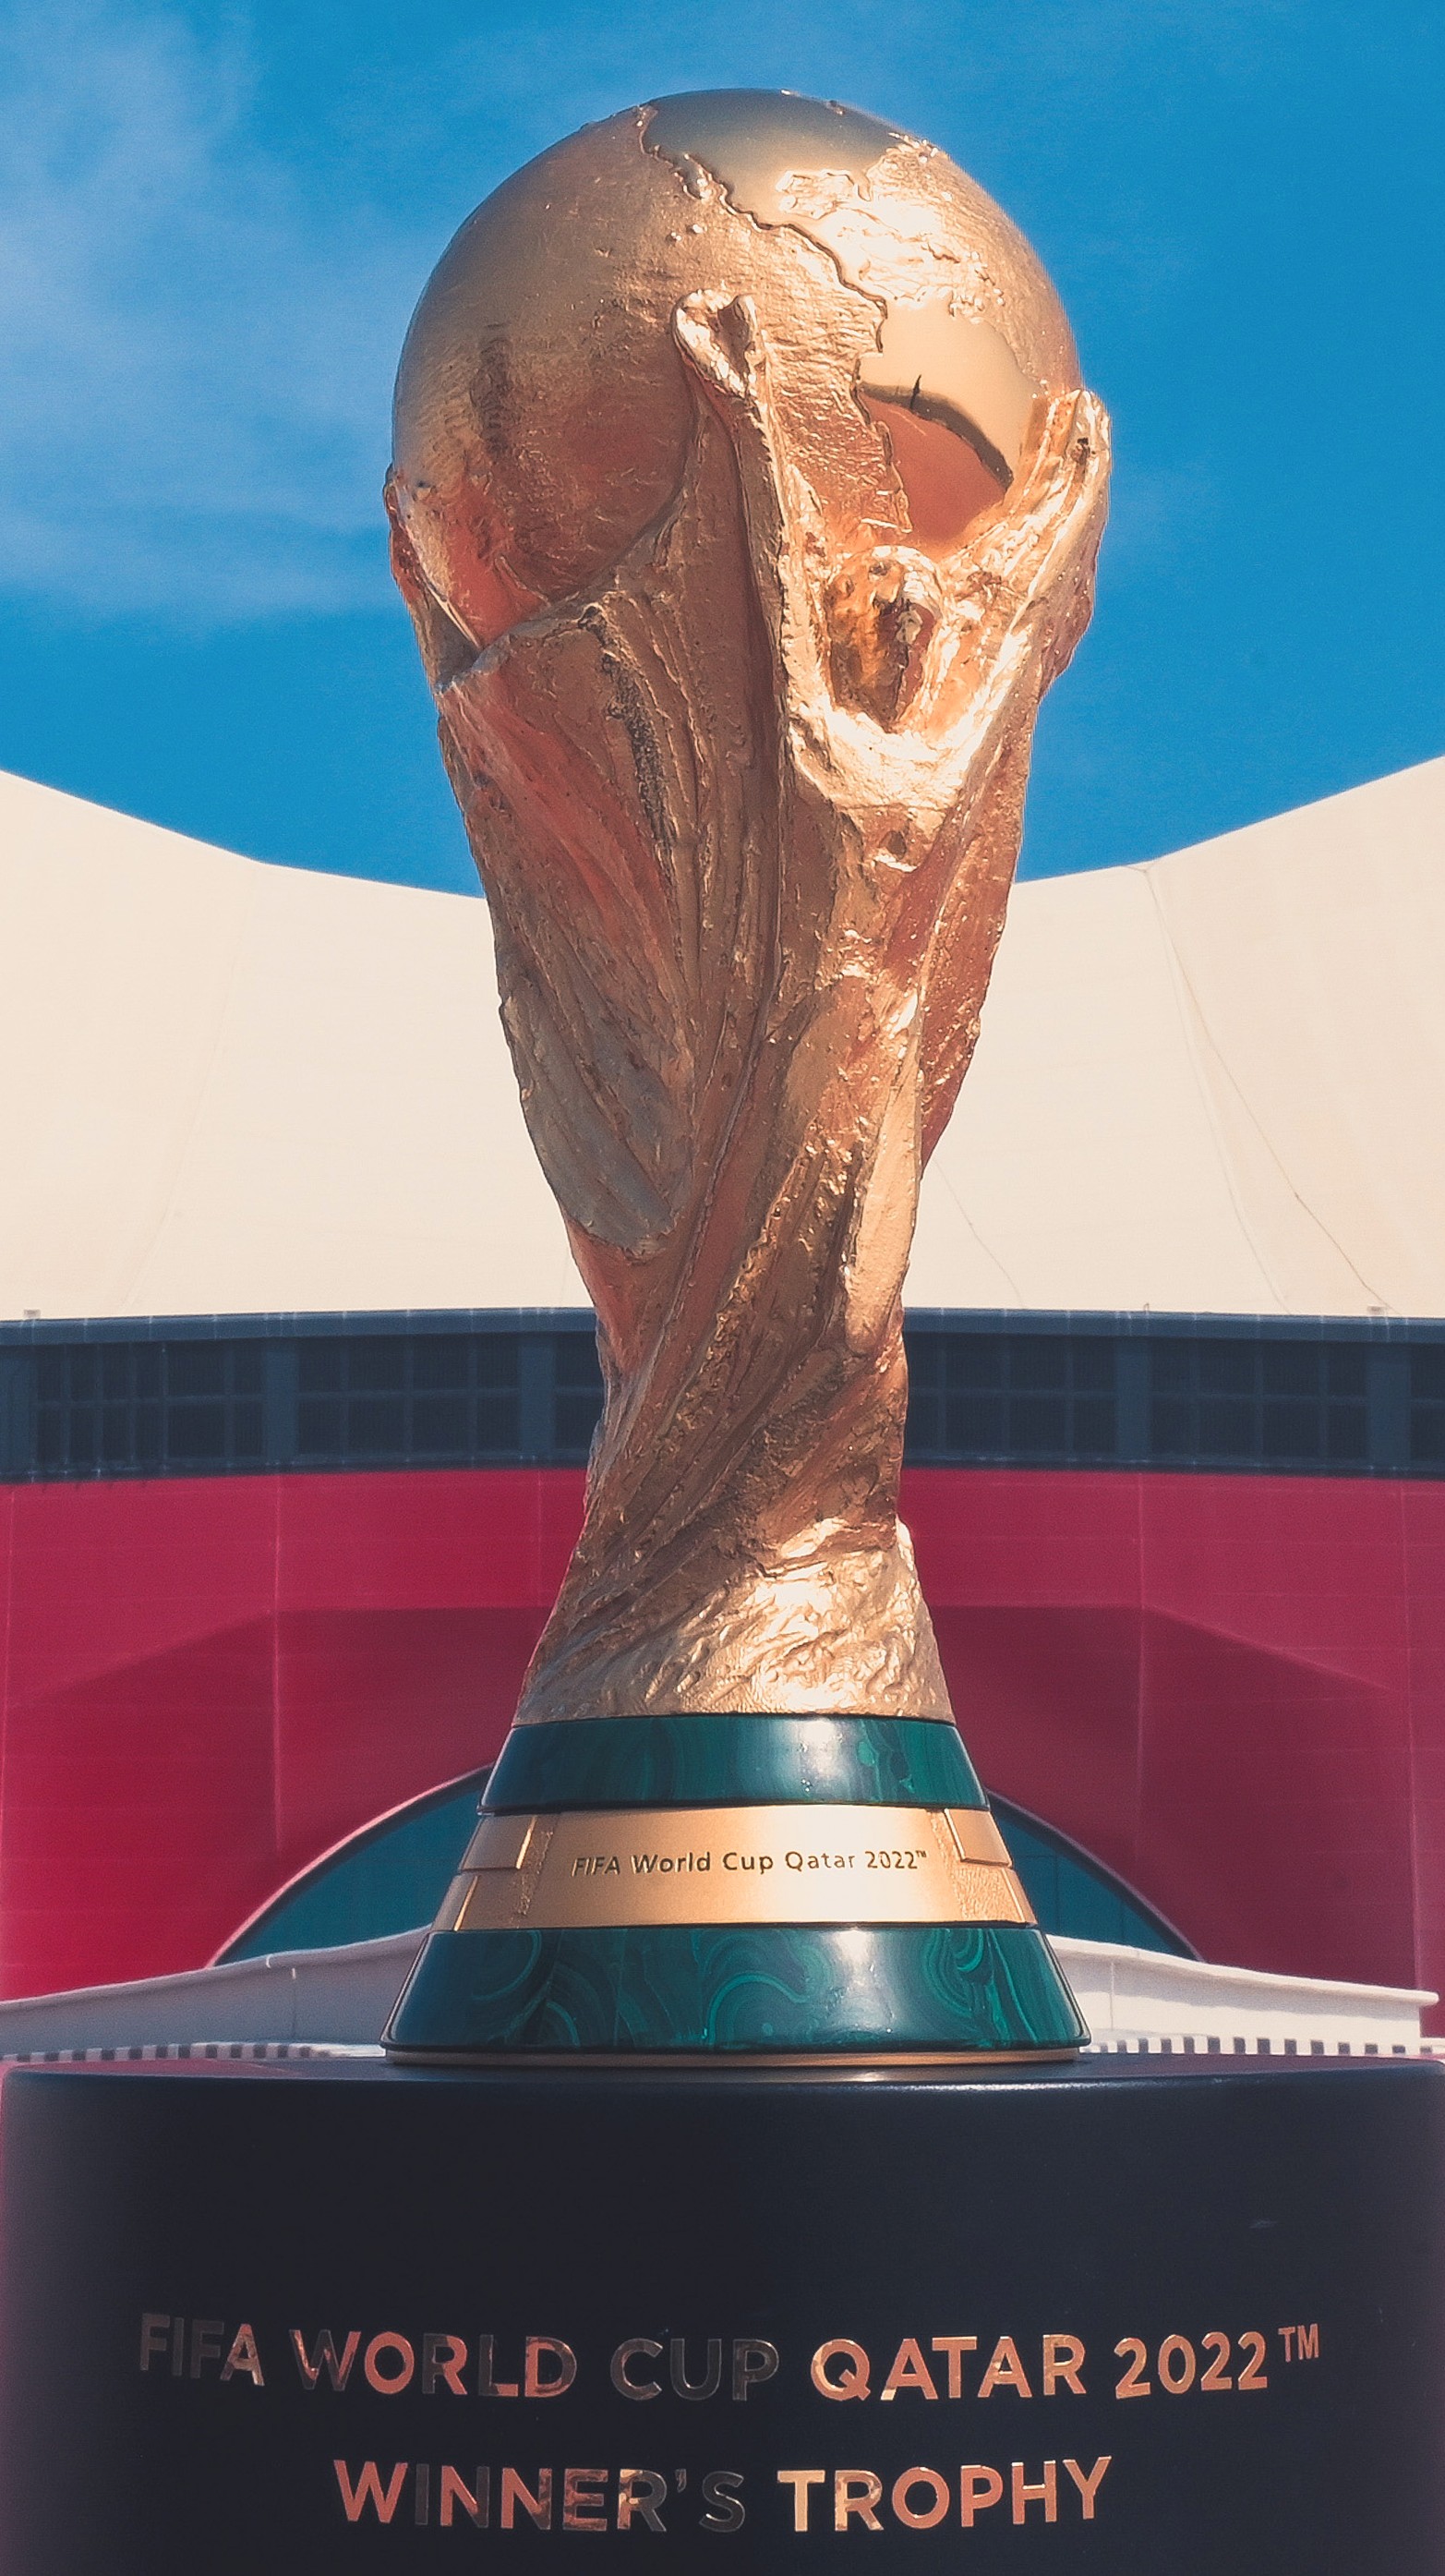 Bolha de atleta, público e regra a estrangeiro: como será o Mundial da Fifa  - 19/01/2021 - UOL Esporte